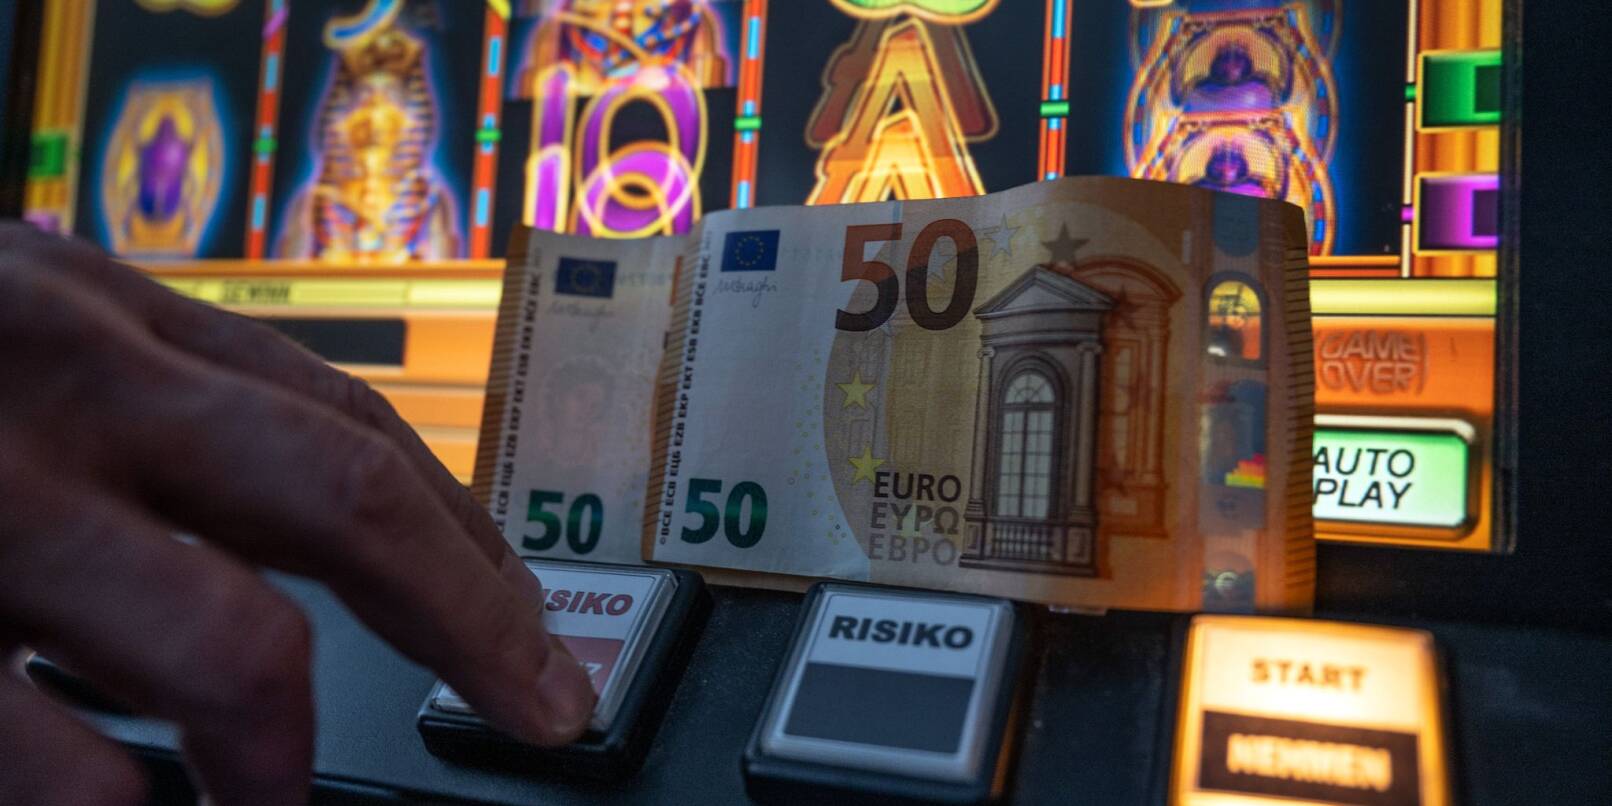 Zwei 50 Euro Scheine liegen auf einem Fun-Game-Automat.